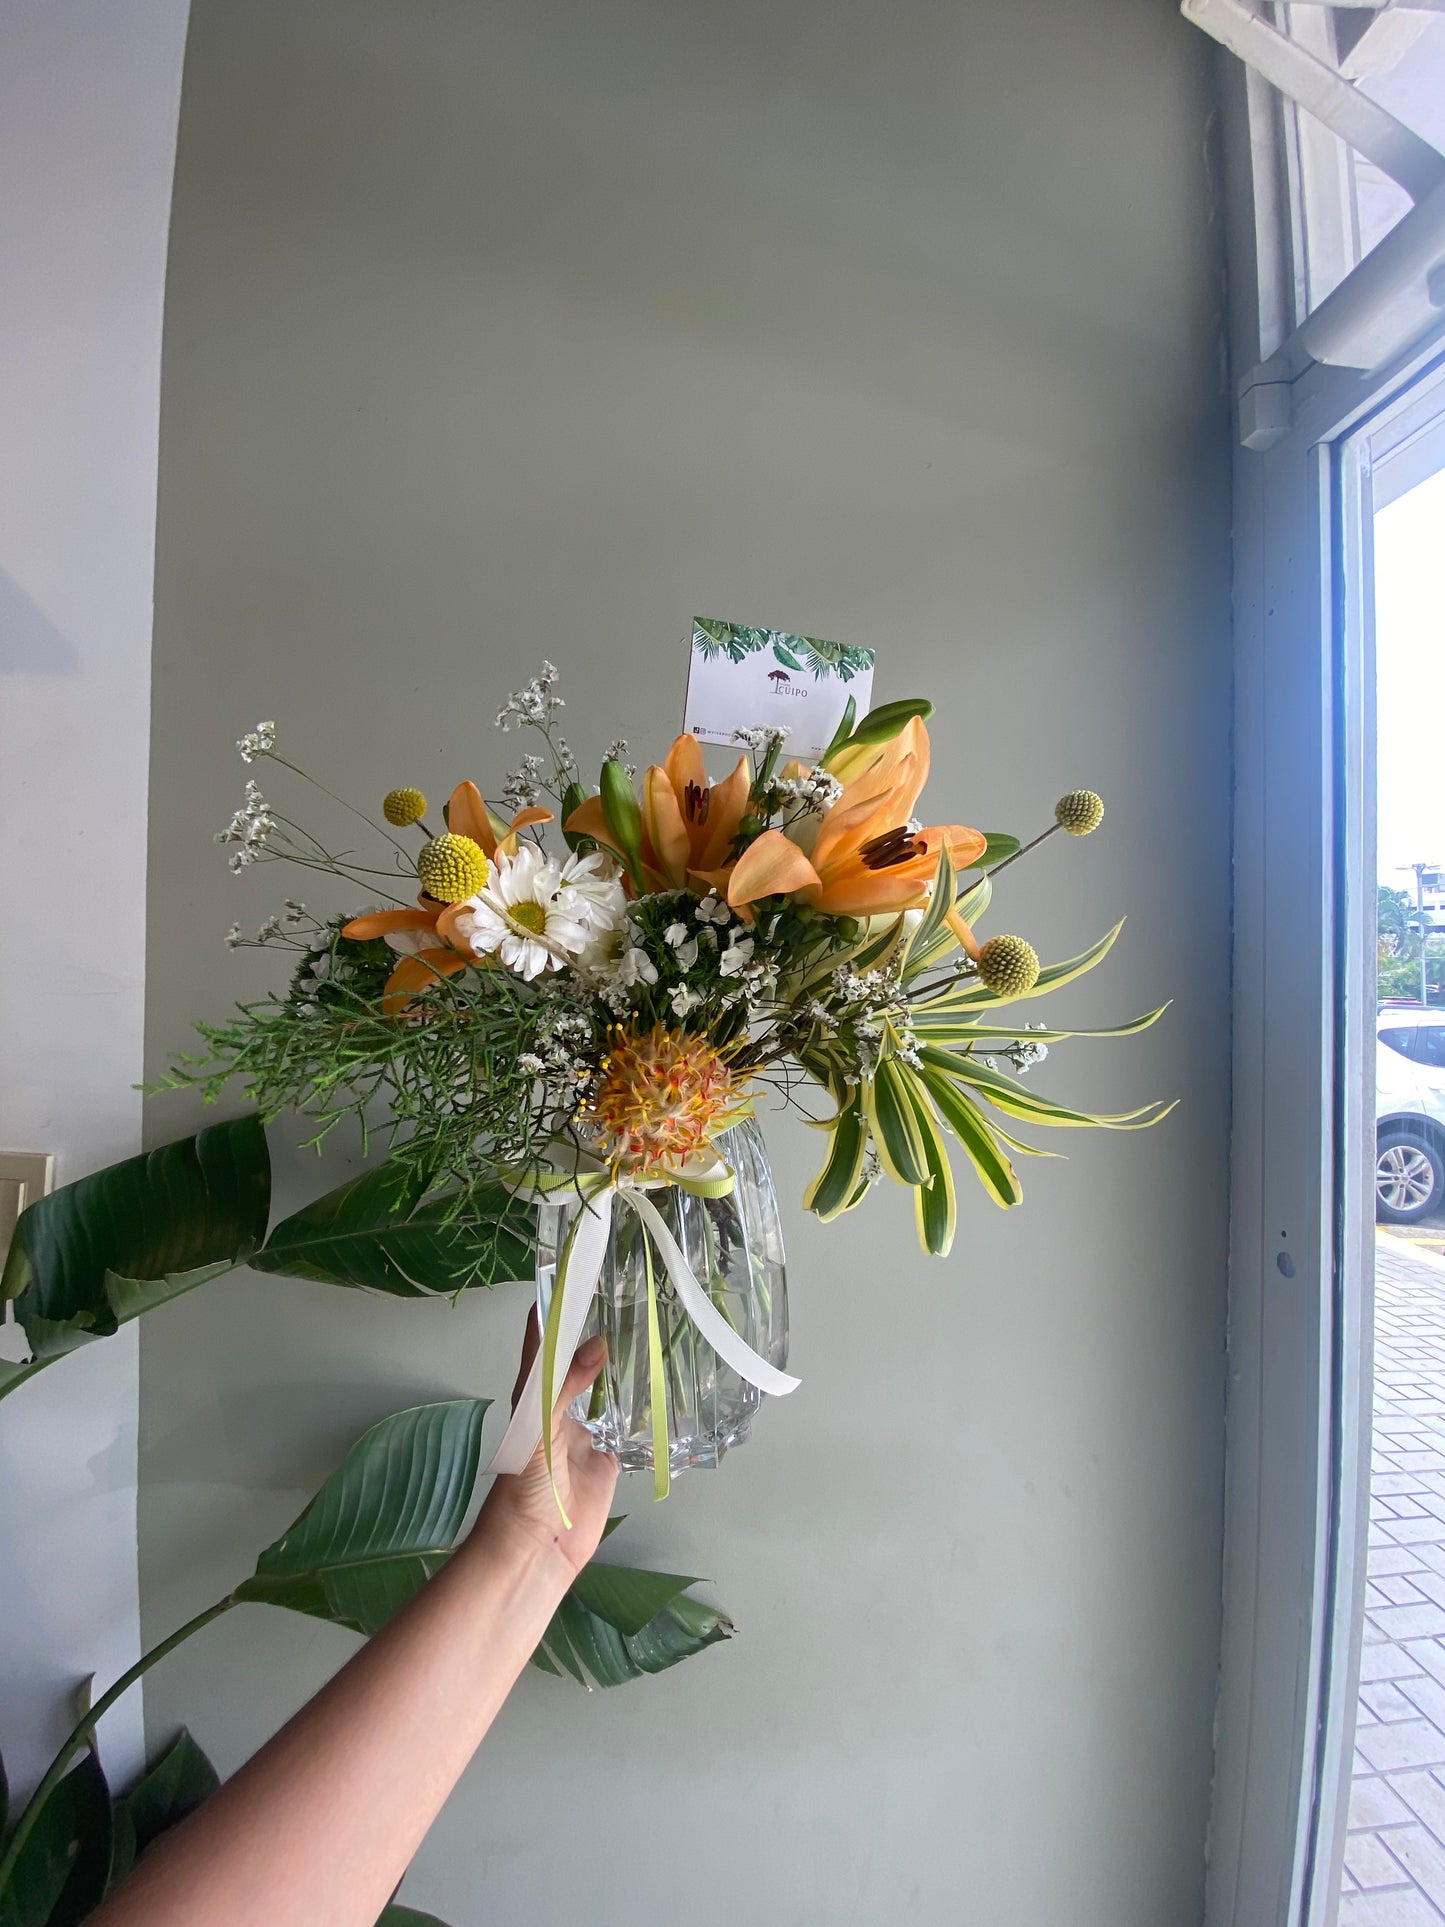 Bouquet de 20 Tallos: Elegancia Floral en su Máxima Expresión